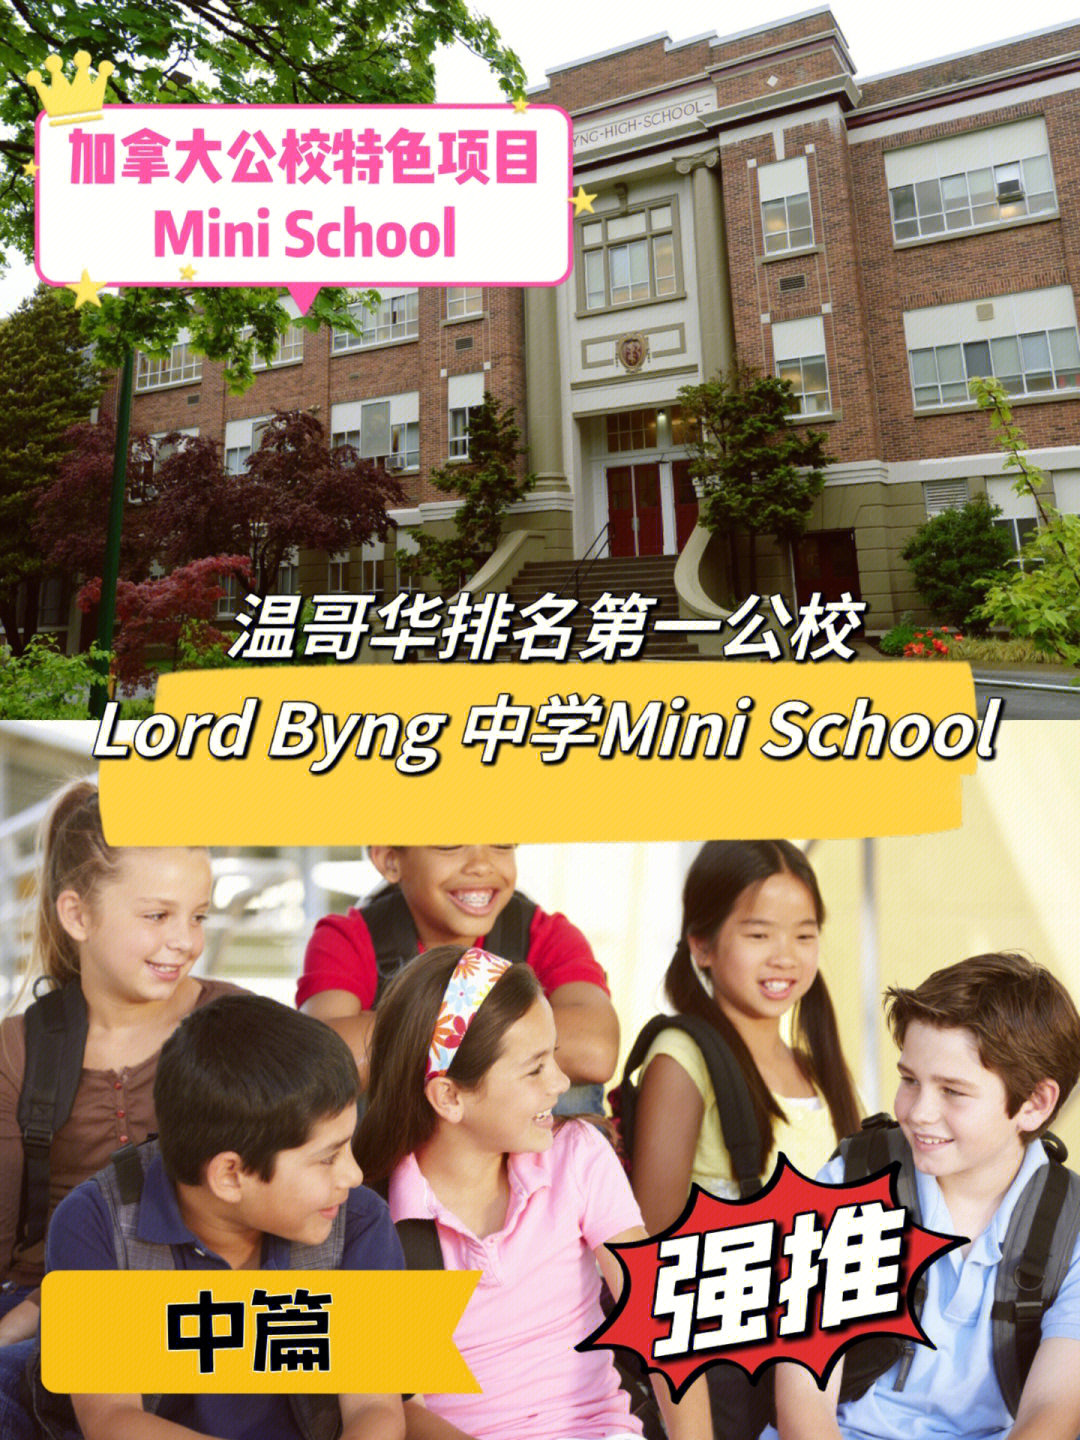 [星r]lord byng中学位于温哥华西区,占地9英亩,距离ubc只有2公里